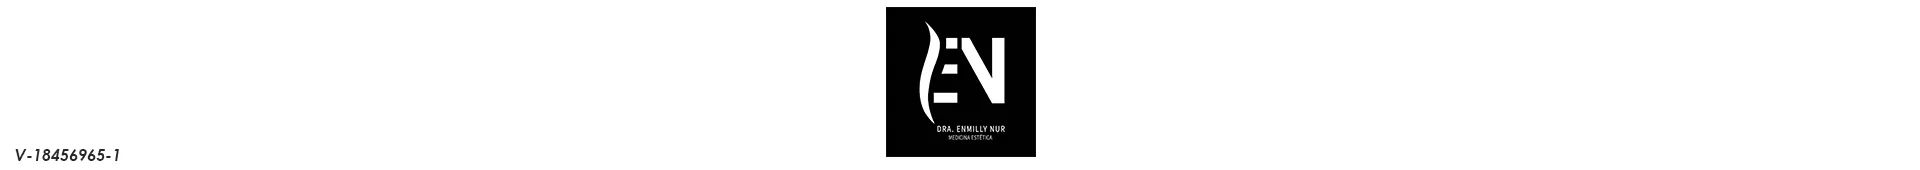 Imagen 1 del perfil de Dra. Enmilly Nur